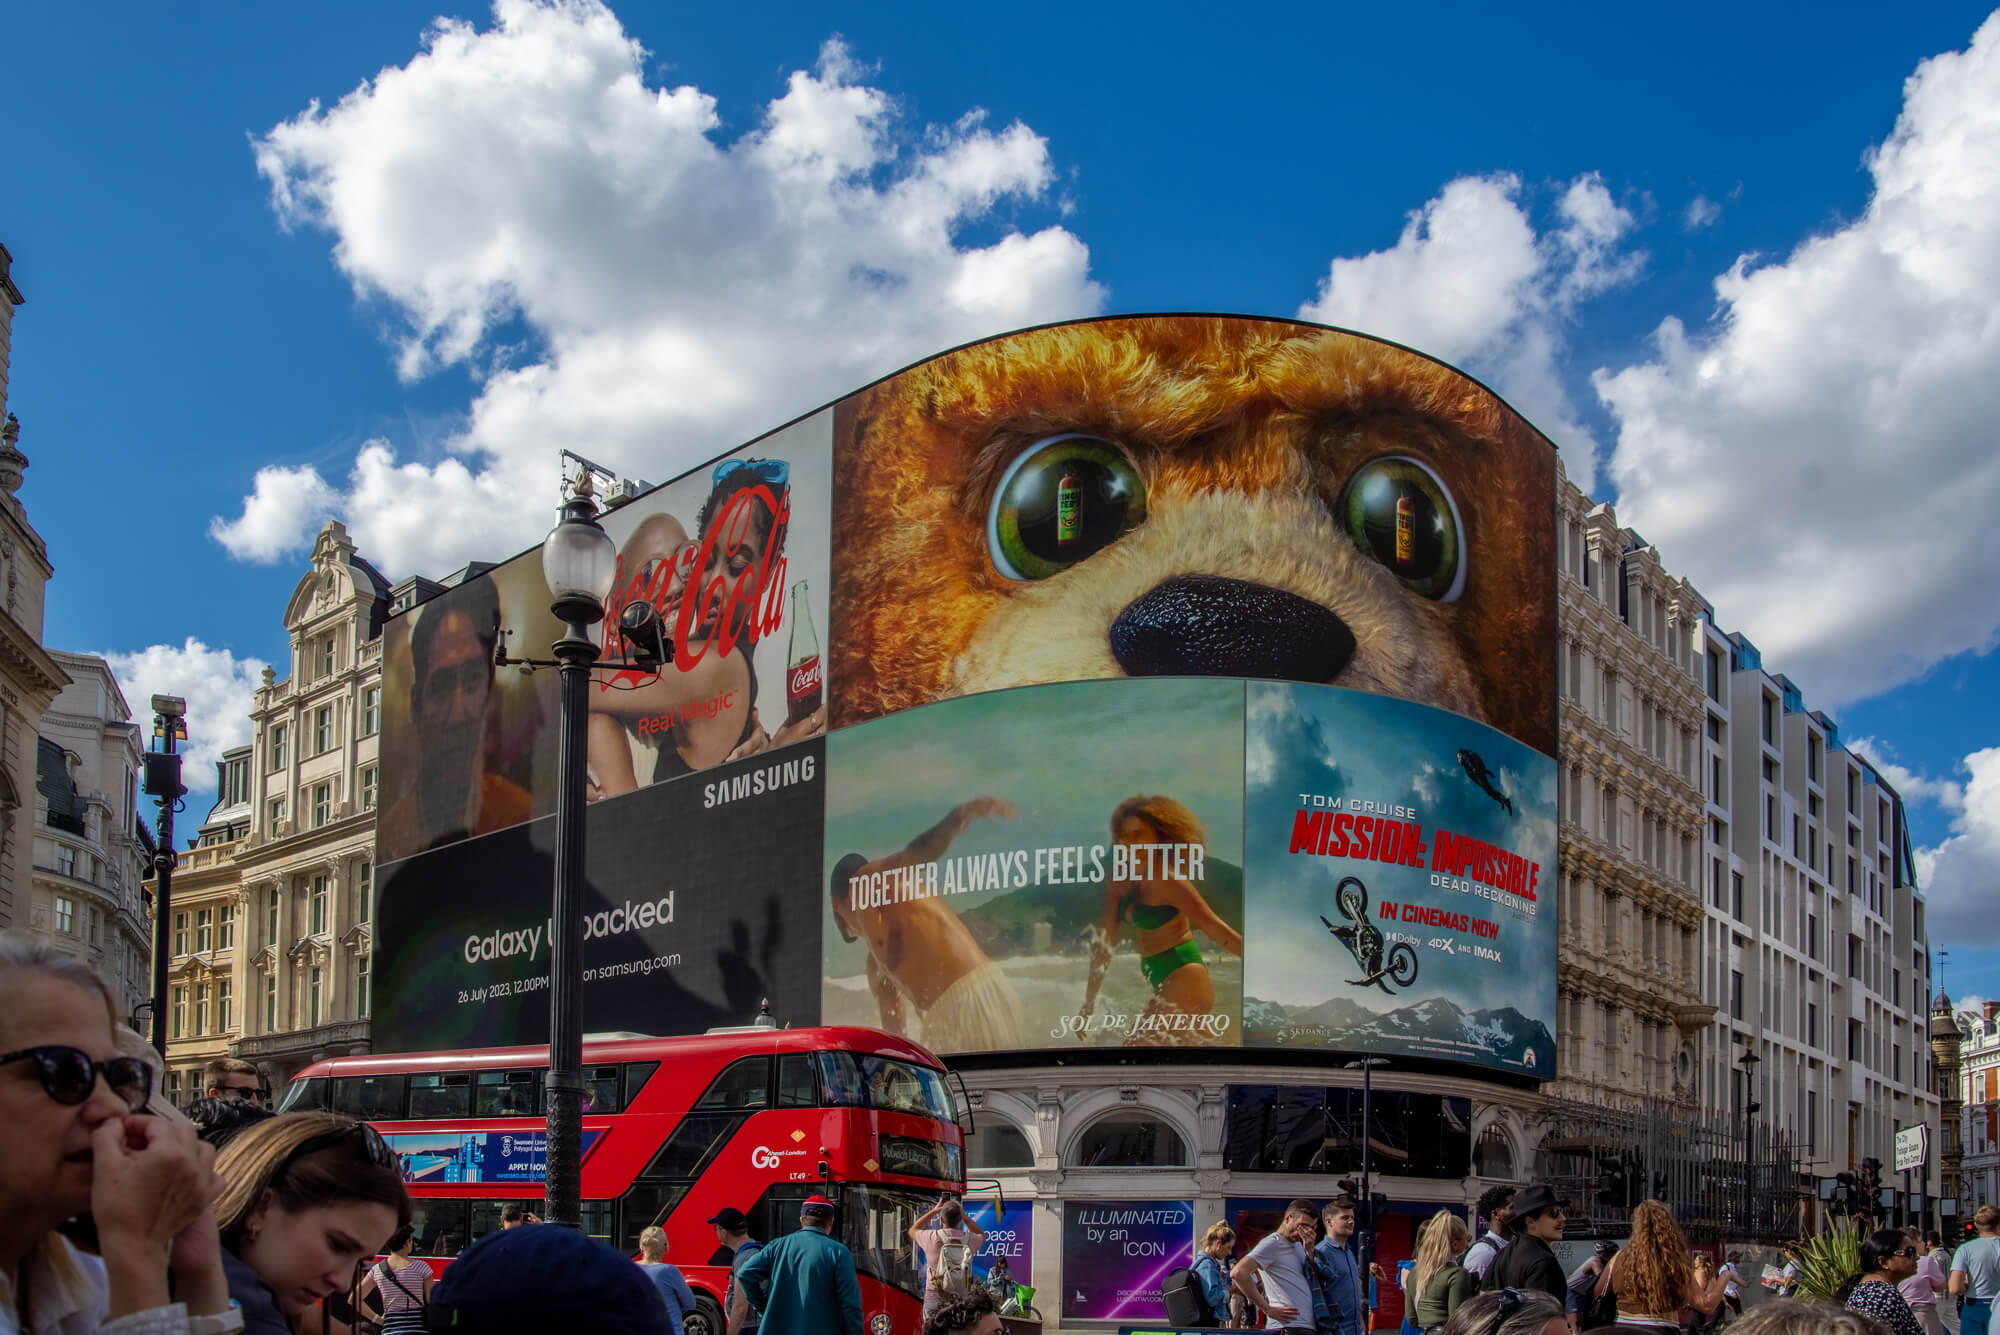 Der Piccadilly Circus ist berühmt für seine gebogene haushohe Leuchtreklametafel, die hier im Mittelpung des Bildes zu sehen ist. Von links durchquert ein typischer roter Doppelstockbus das Bild.